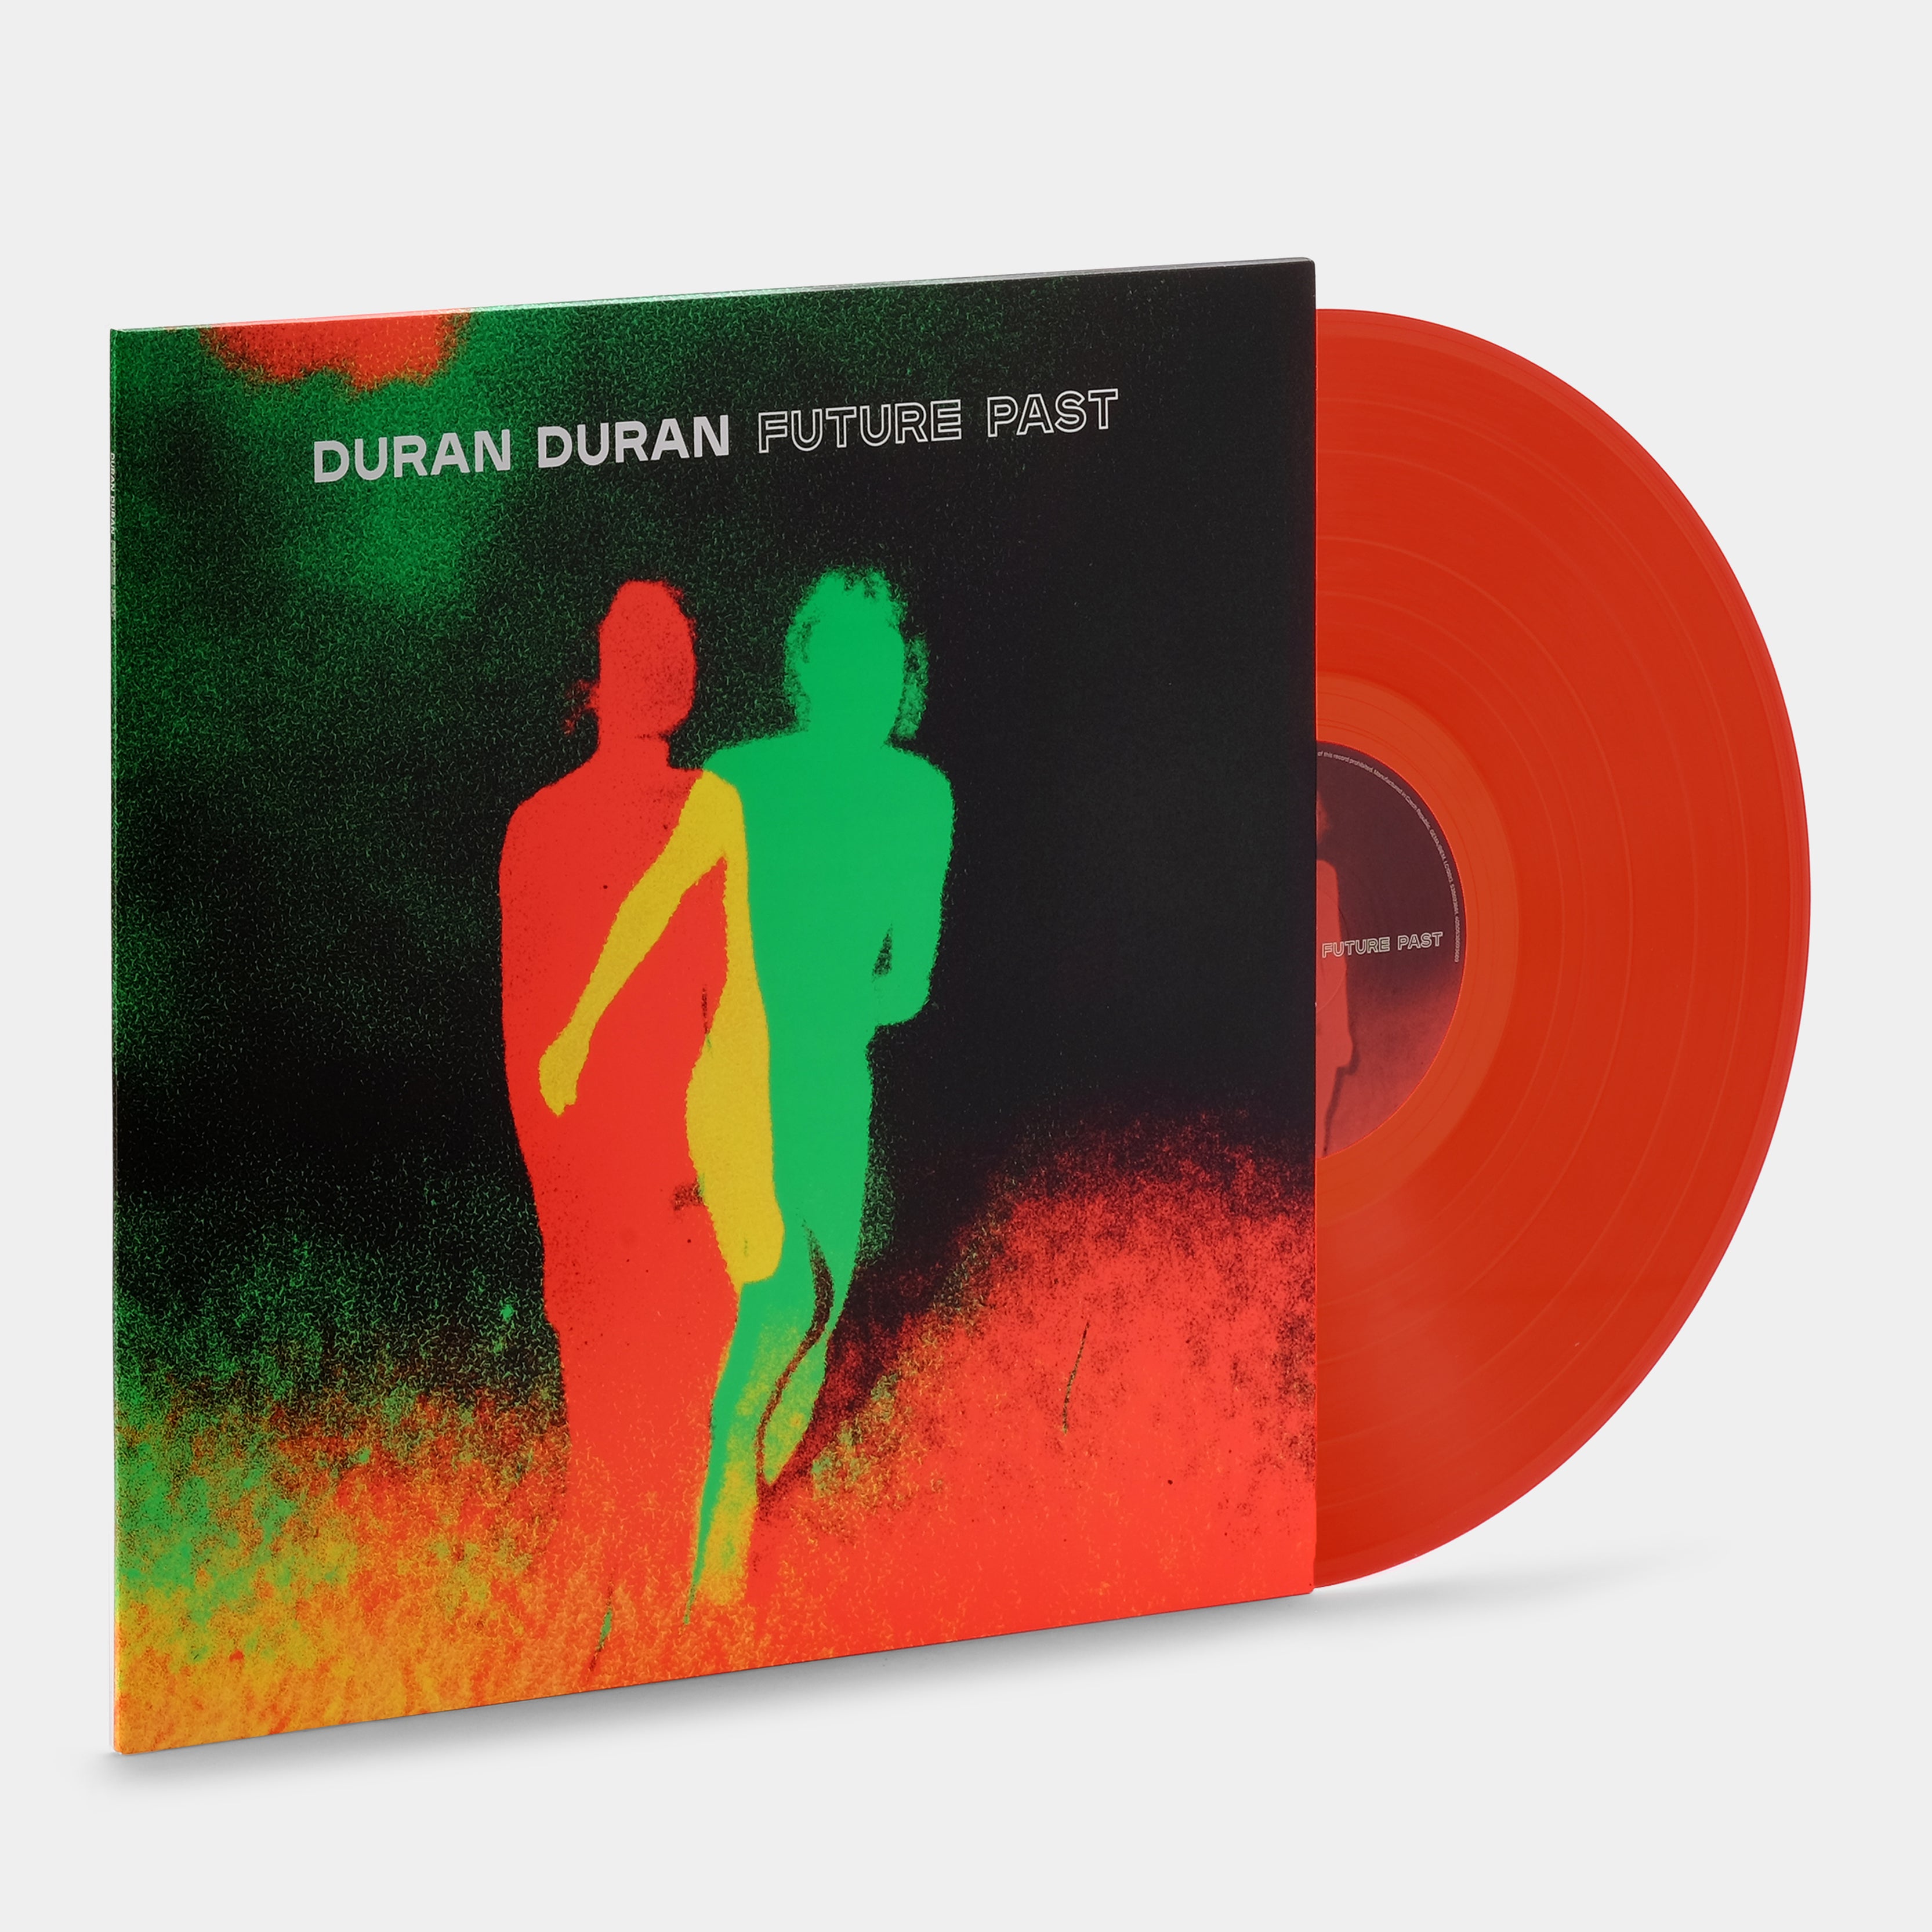 Duran Duran - Future Past (Indie Exclusive) LP Transparent Red Vinyl Record